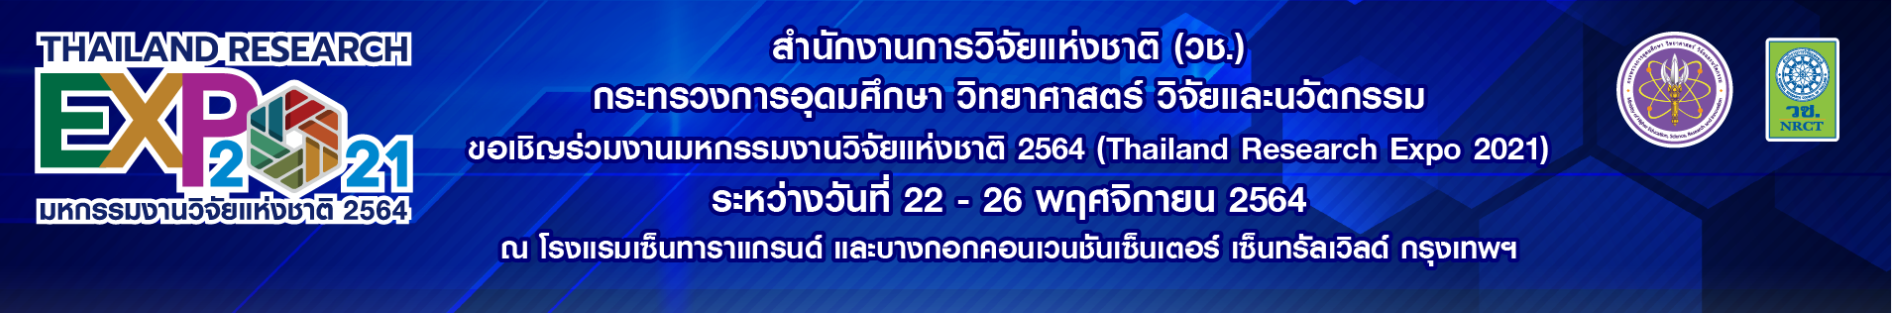 ขอเชิญร่วมงาน "มหกรรมงานวิจัยแห่งชาติ 2564 (Thailand Research Expo 2021)"